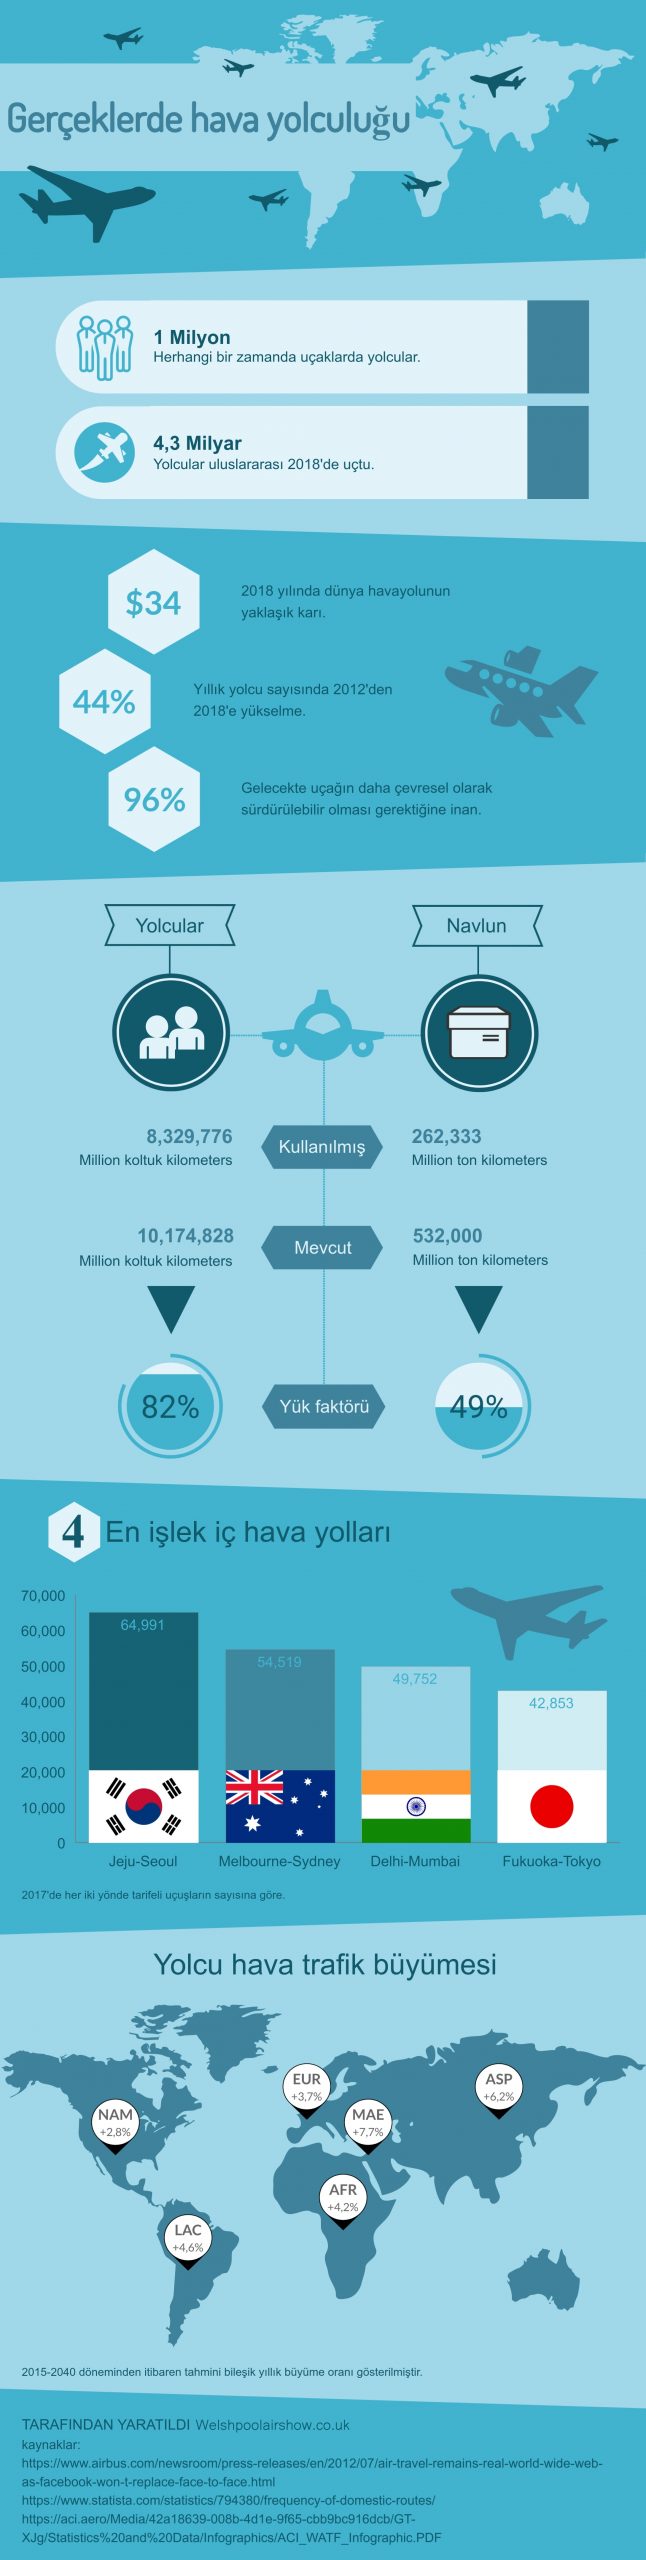 Gerceklerde hava yolculugu infografik